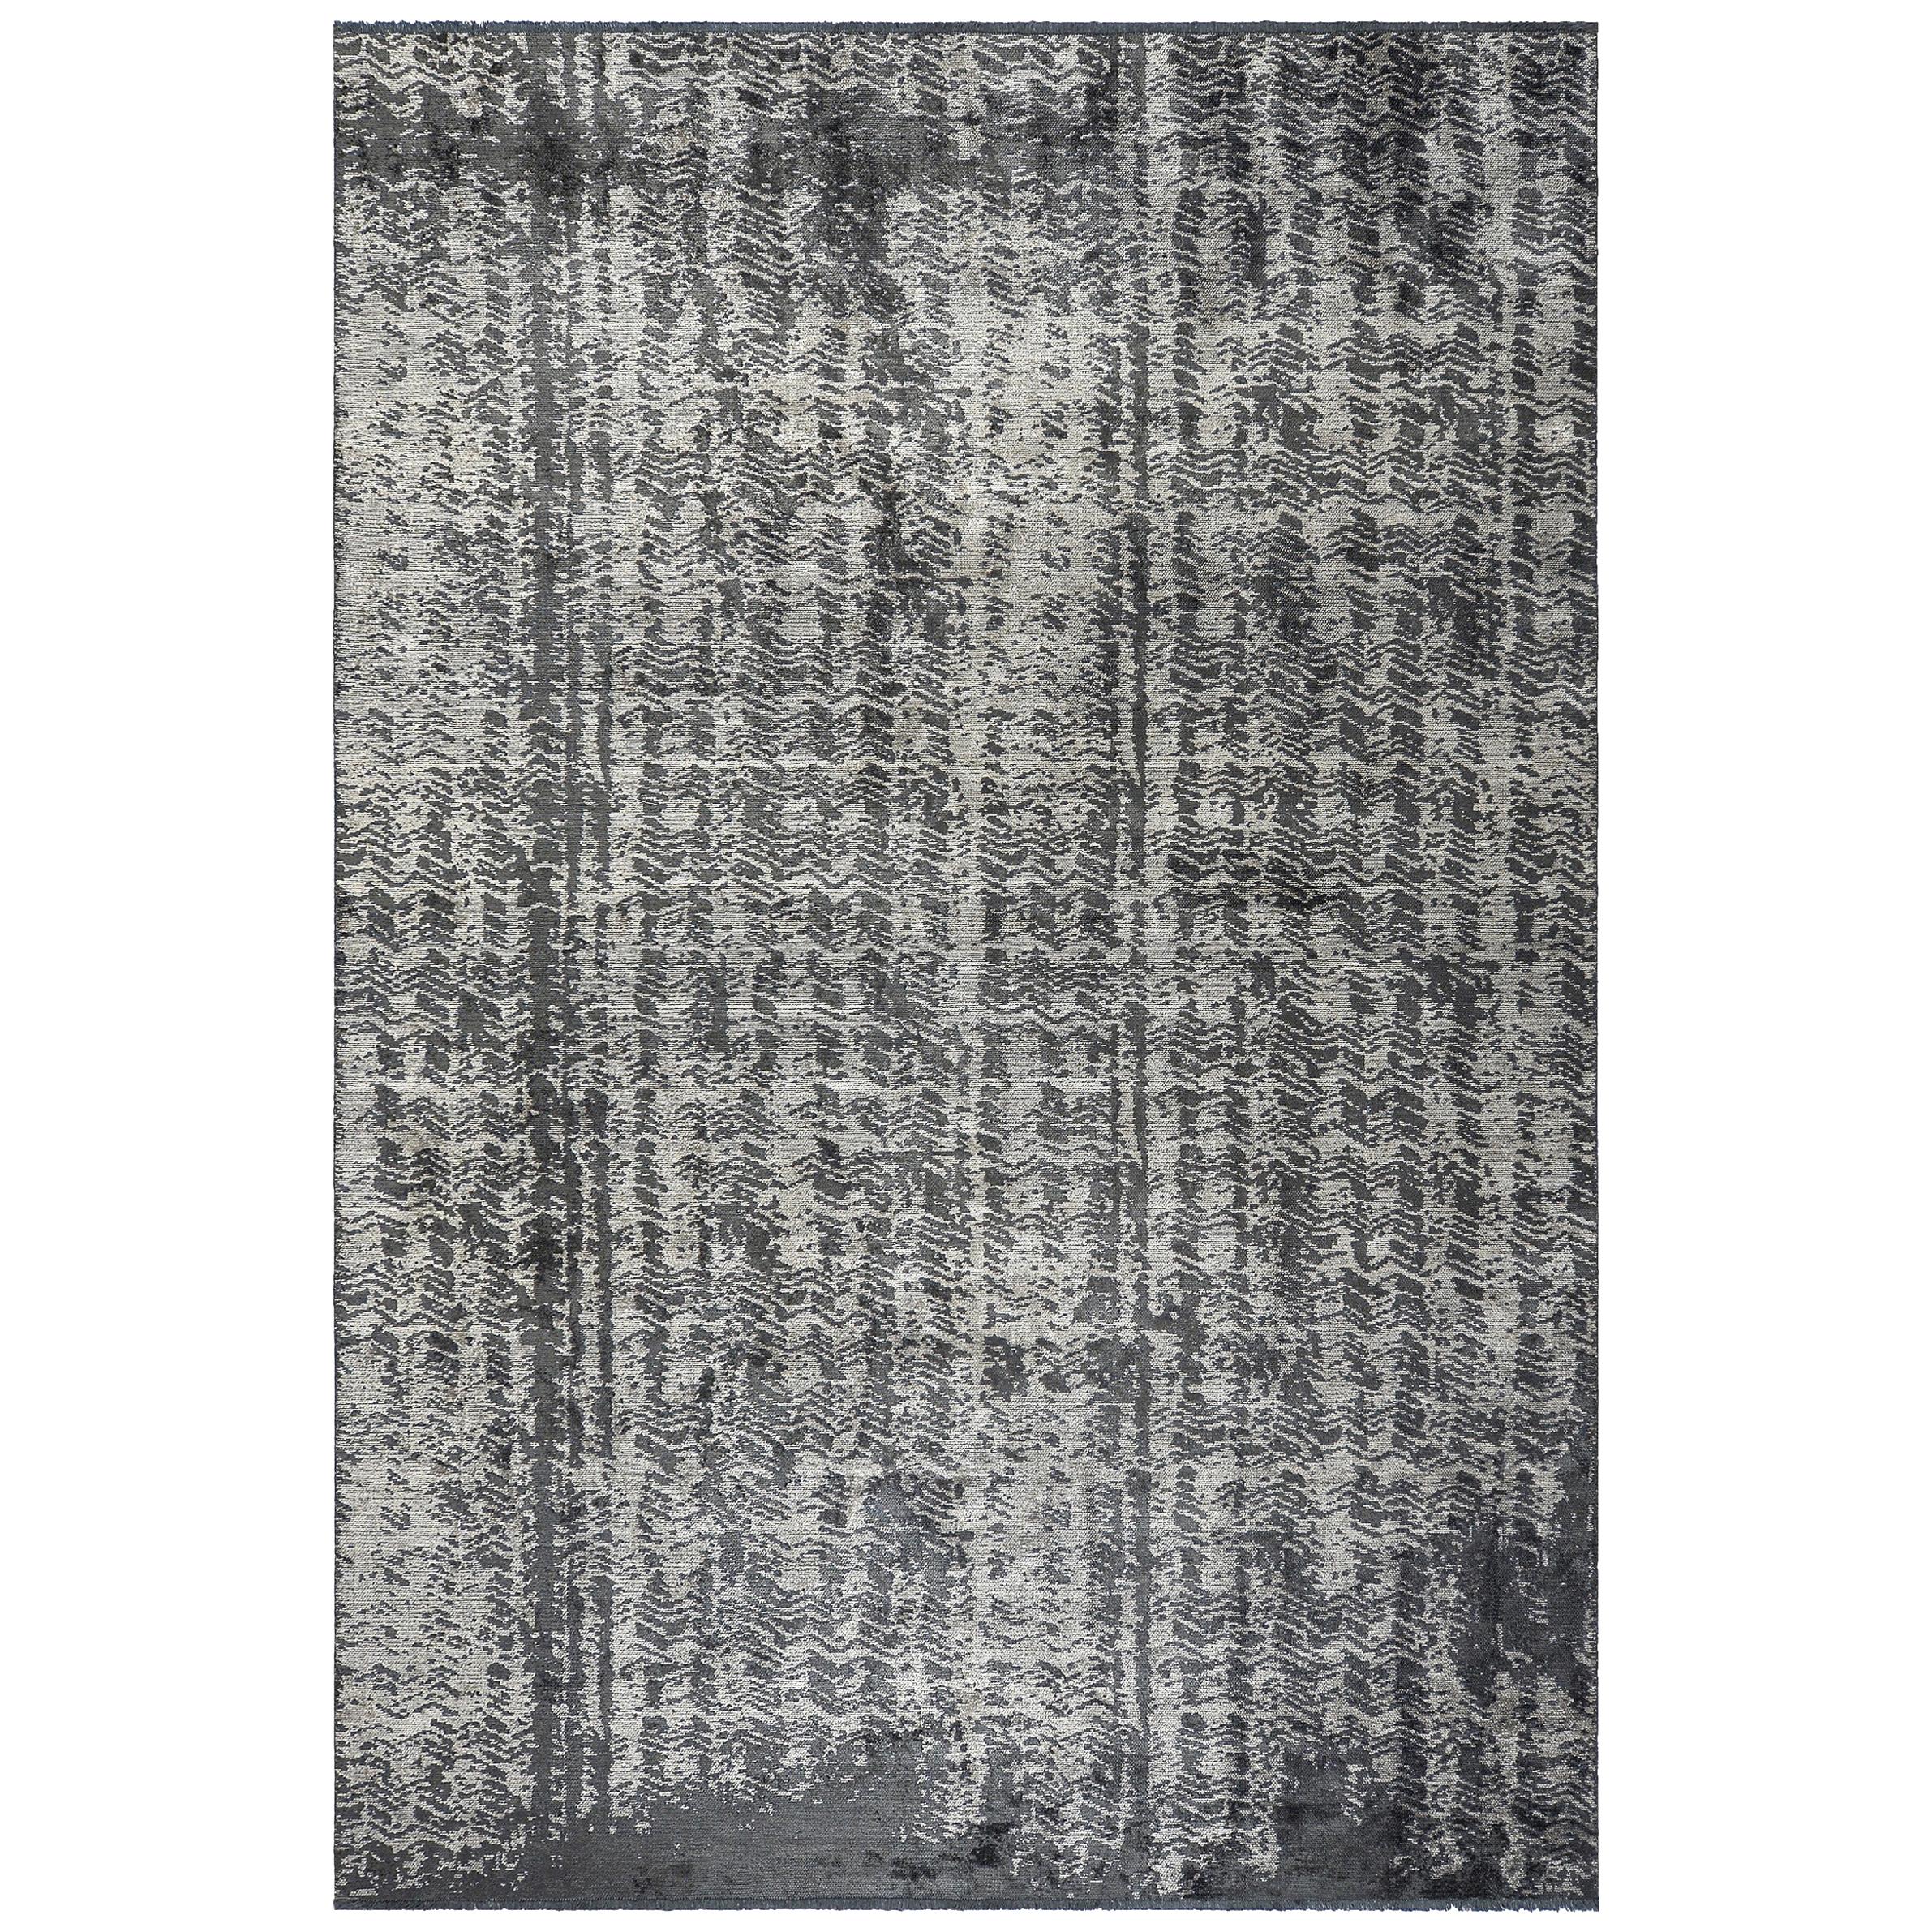 Abstrakt gemusterter Teppich mit Glanz in Beige, Grau, Mittelgrau und Anthrazit 